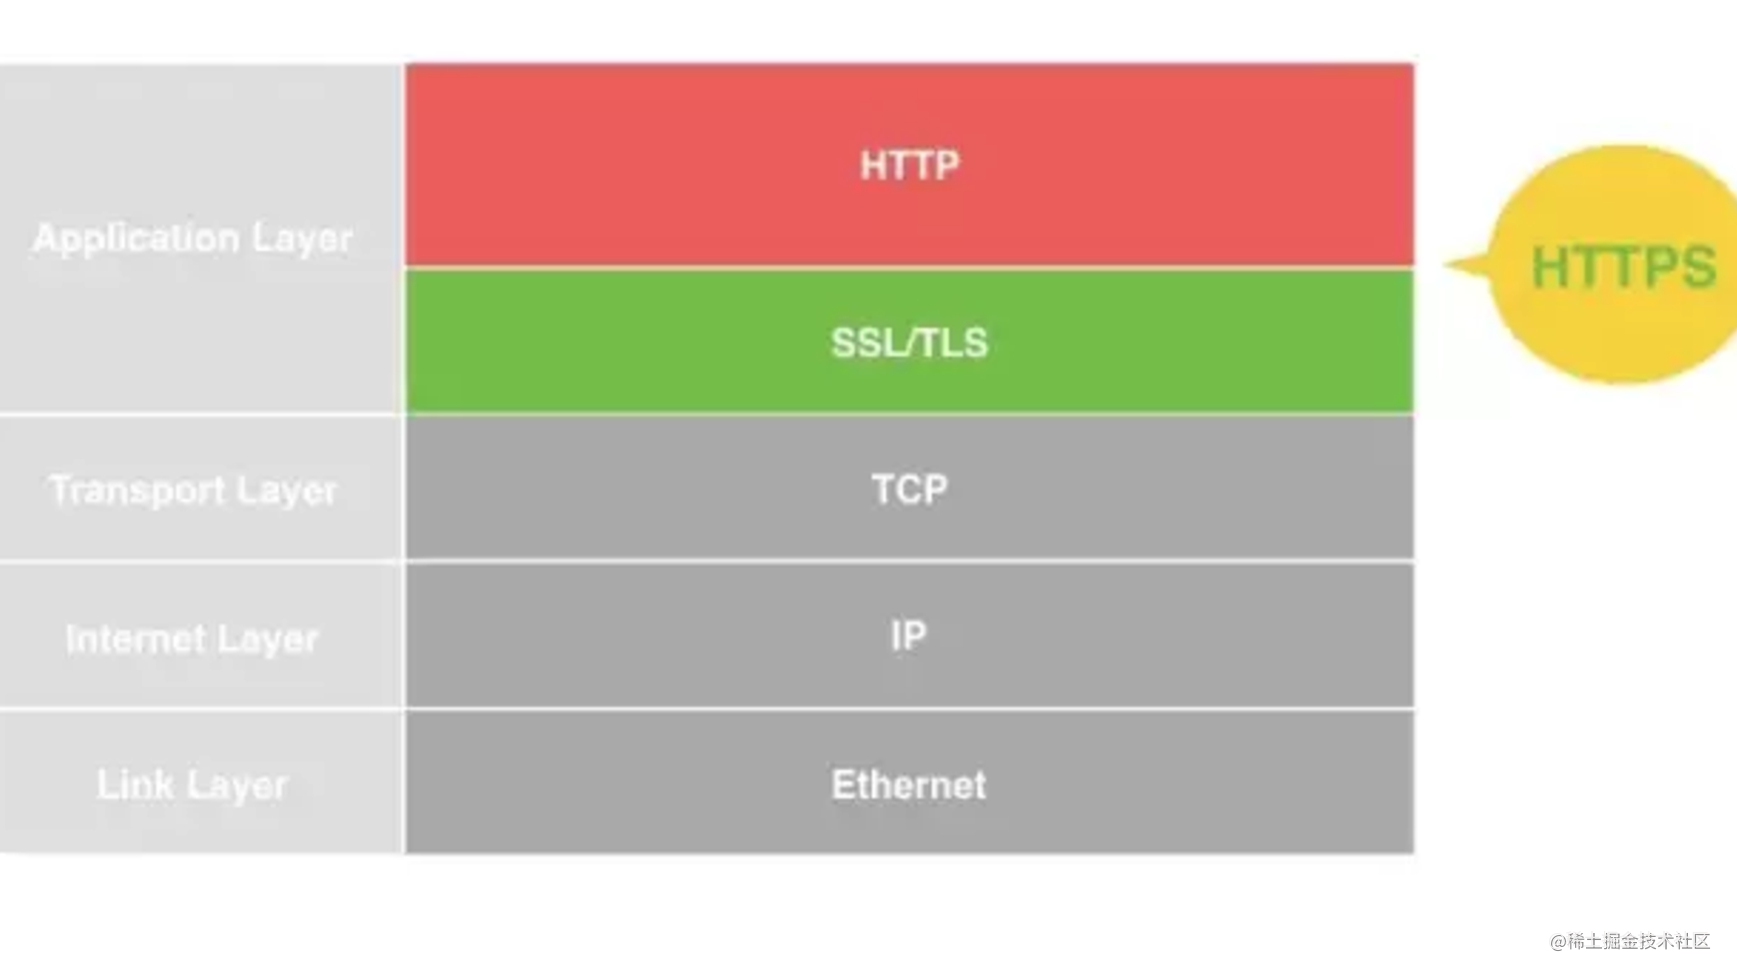 HTTPS：互联网世界的安全基础